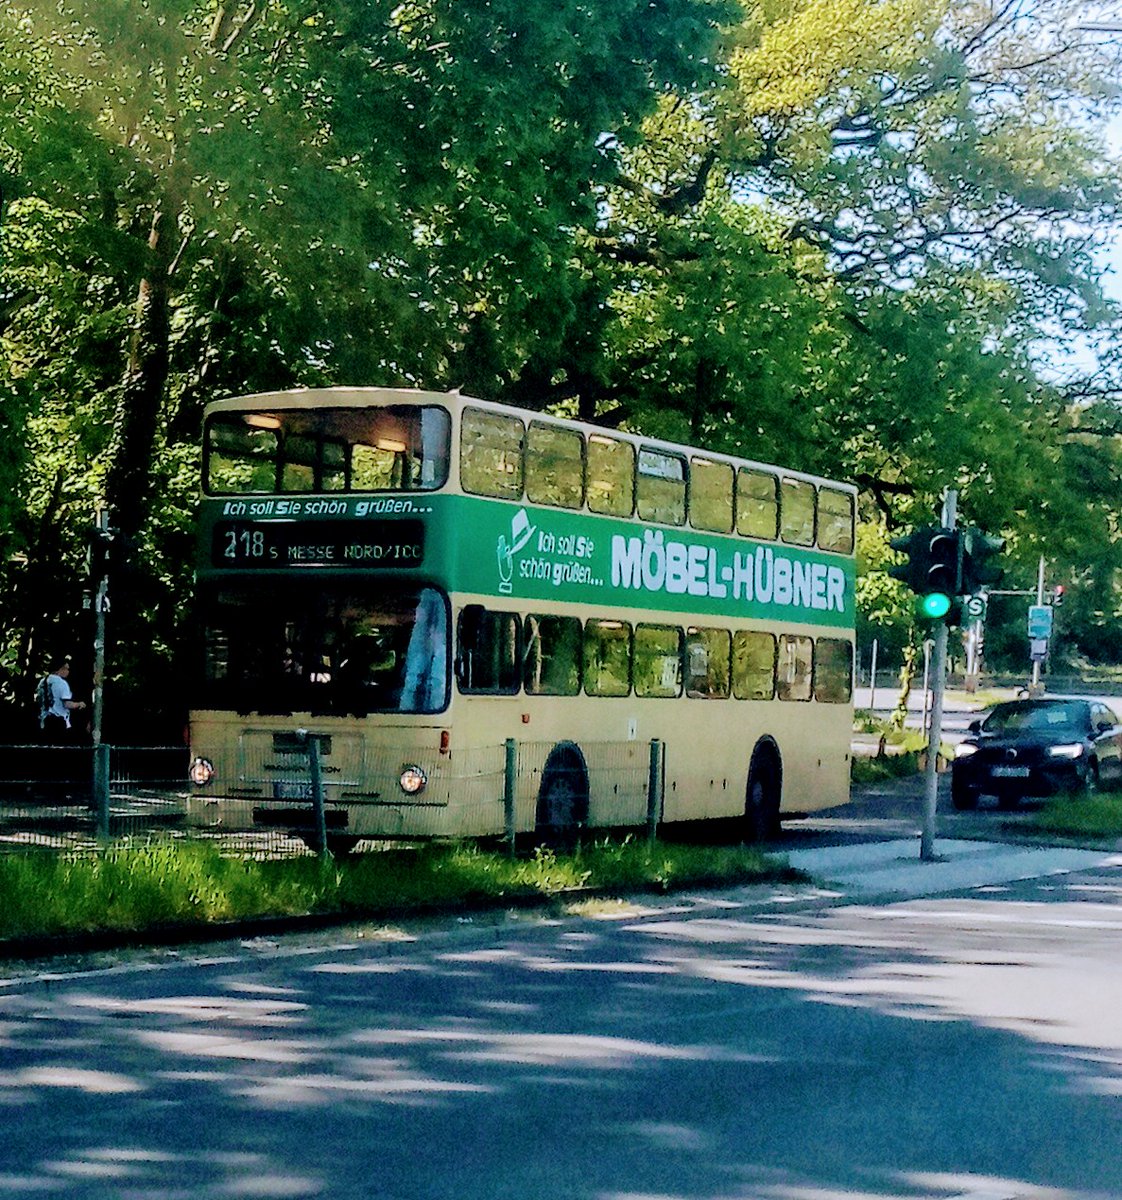 Foto von einem historischen BVG- Doppeldecker der 'AG Traditionsbus', der im Auftrag der BVG auf der Linie 218 Richtung Pfaueninsel unterwegs ist (Da geht's durch den Grunewald)

#LoveBerlin